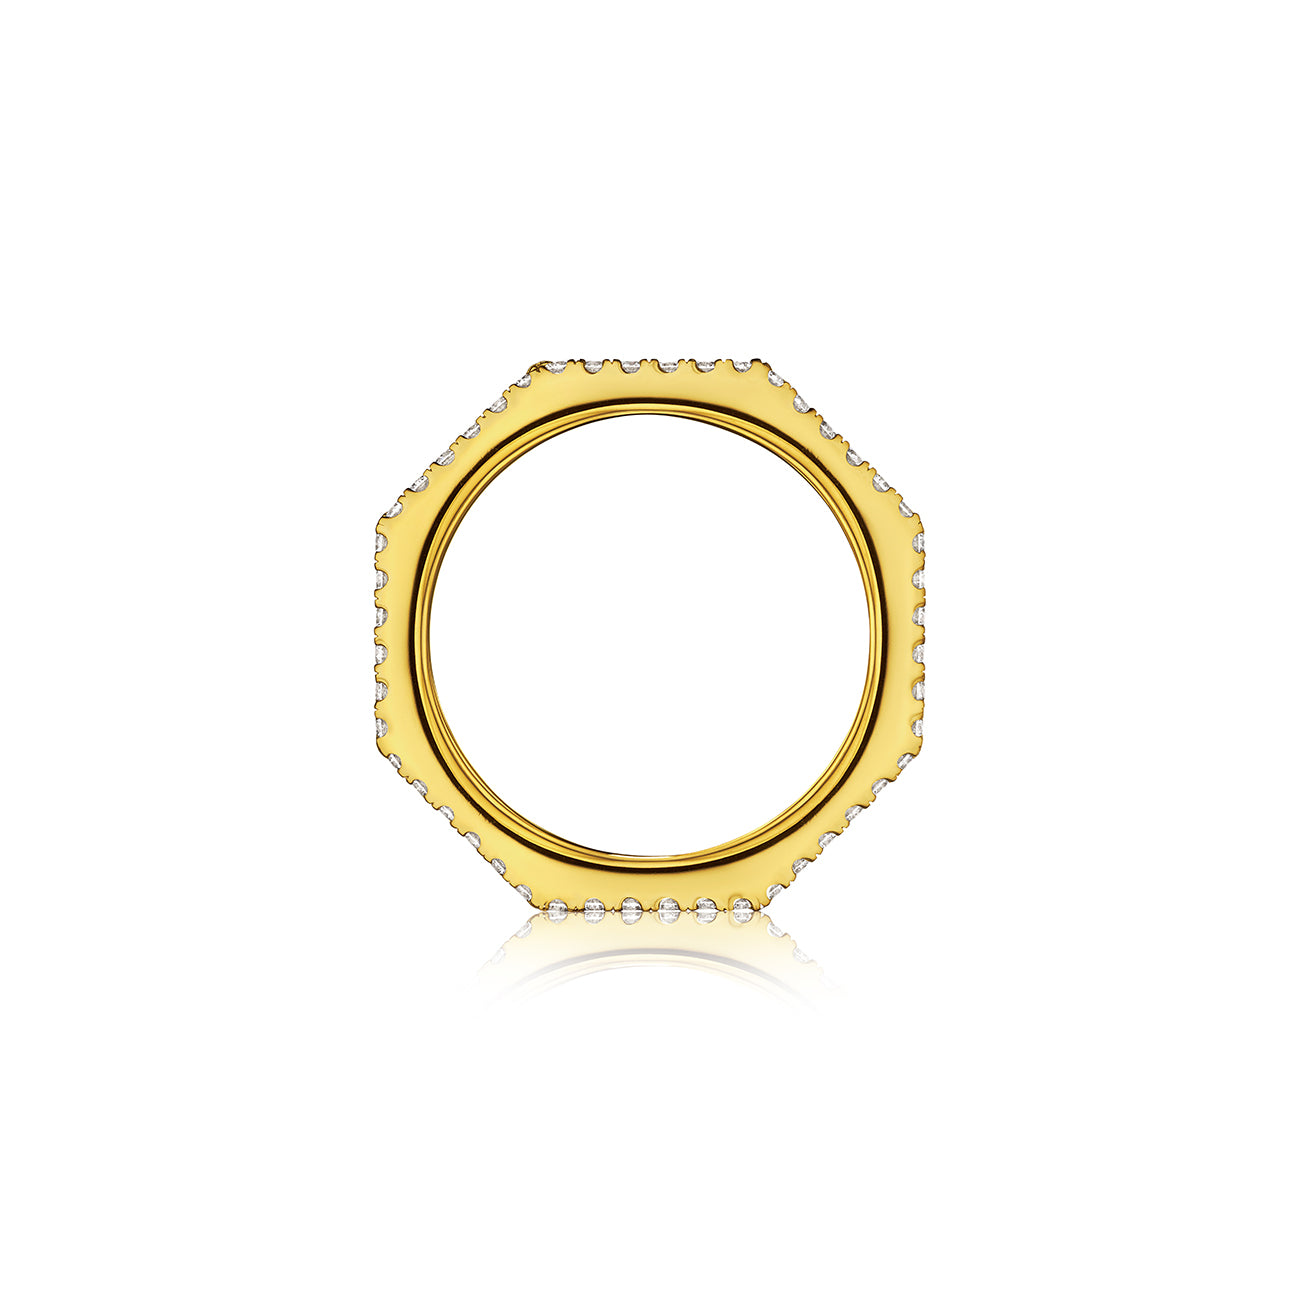 DouDou Band Ring, 18K Yellow Gold, Pavé Diamonds And Princess Cut